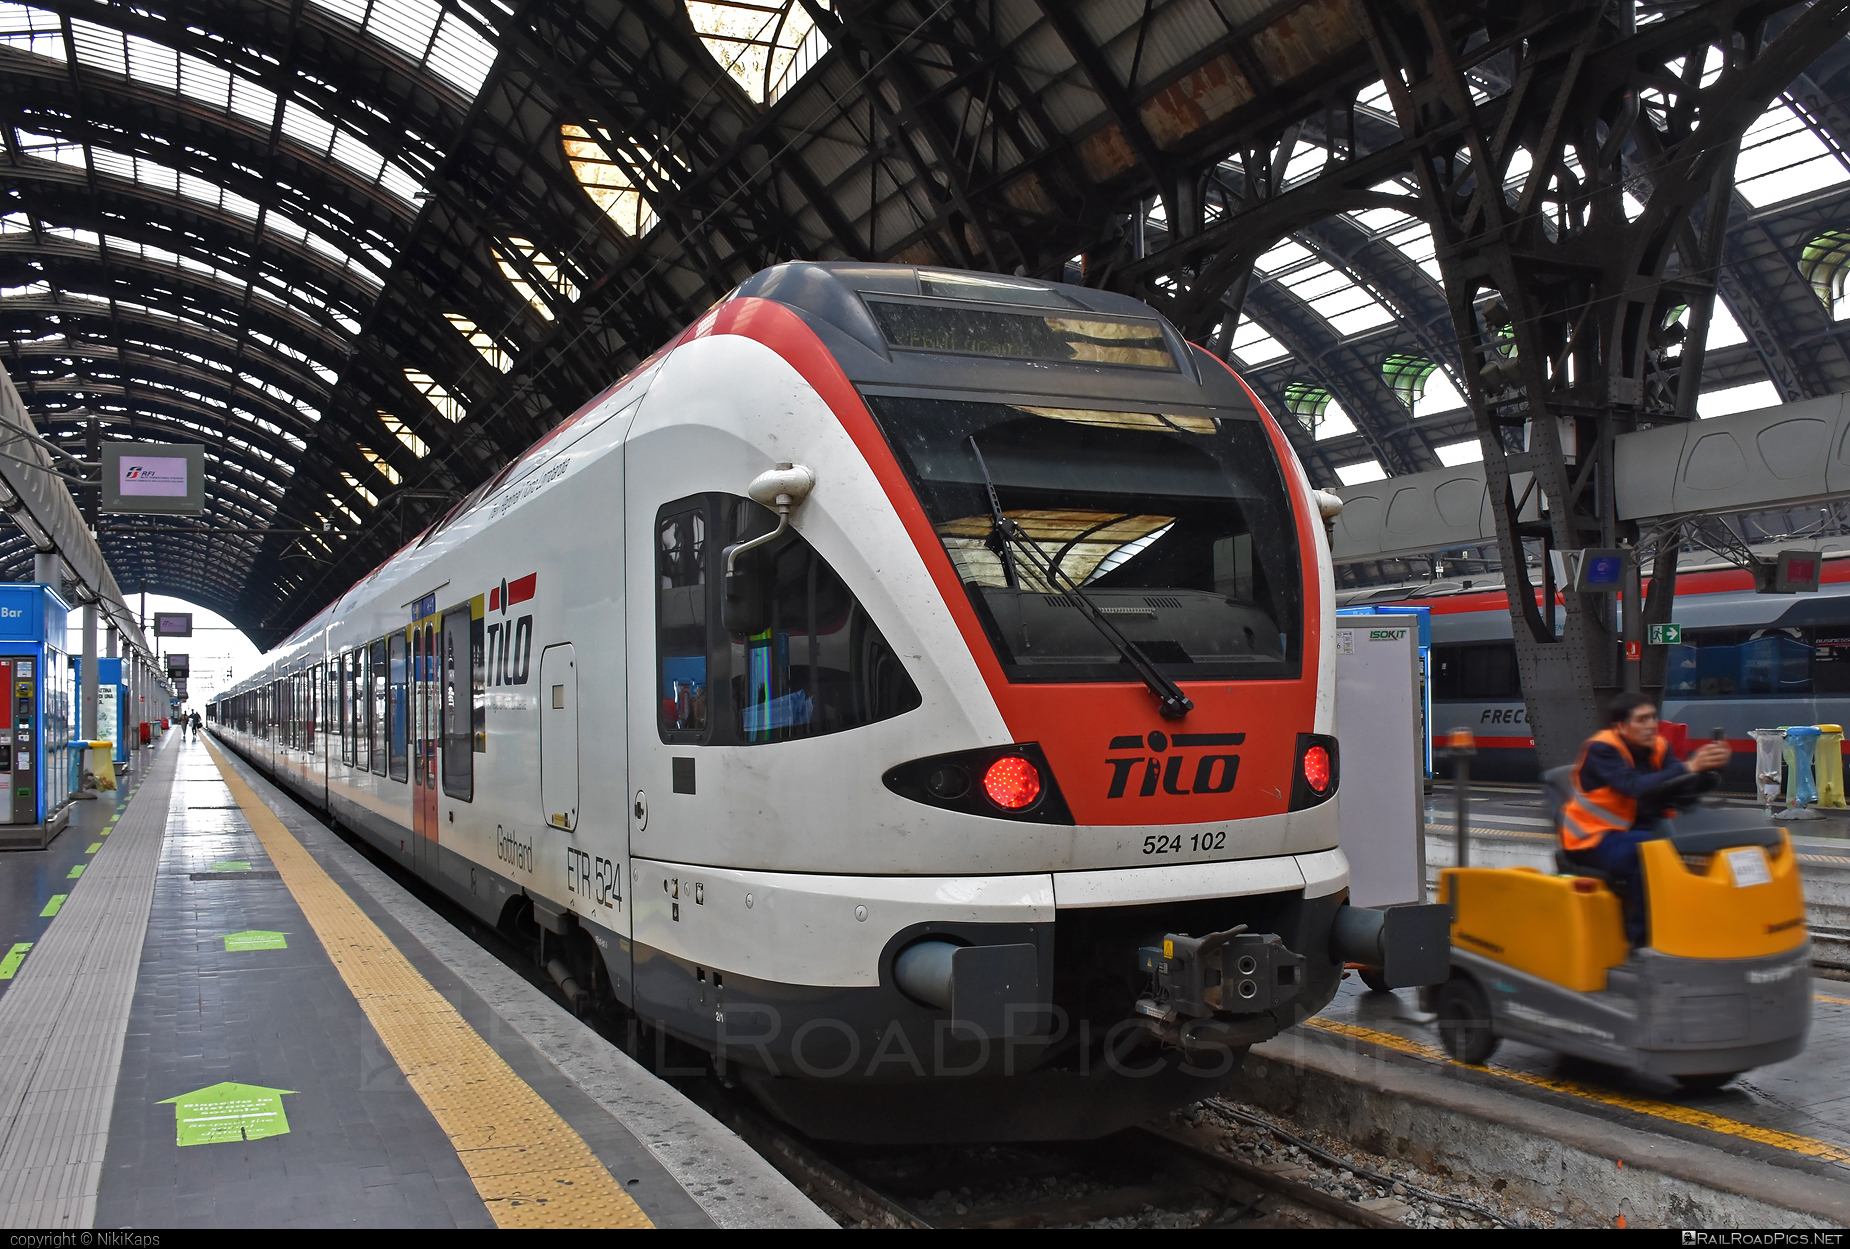 Stadler FLIRT - 524 102 operated by TILO SA #ferroviaFederaliSvizzeri #ffs #stadler #stadlerFlirt #stadlerrail #stadlerrailag #tilo